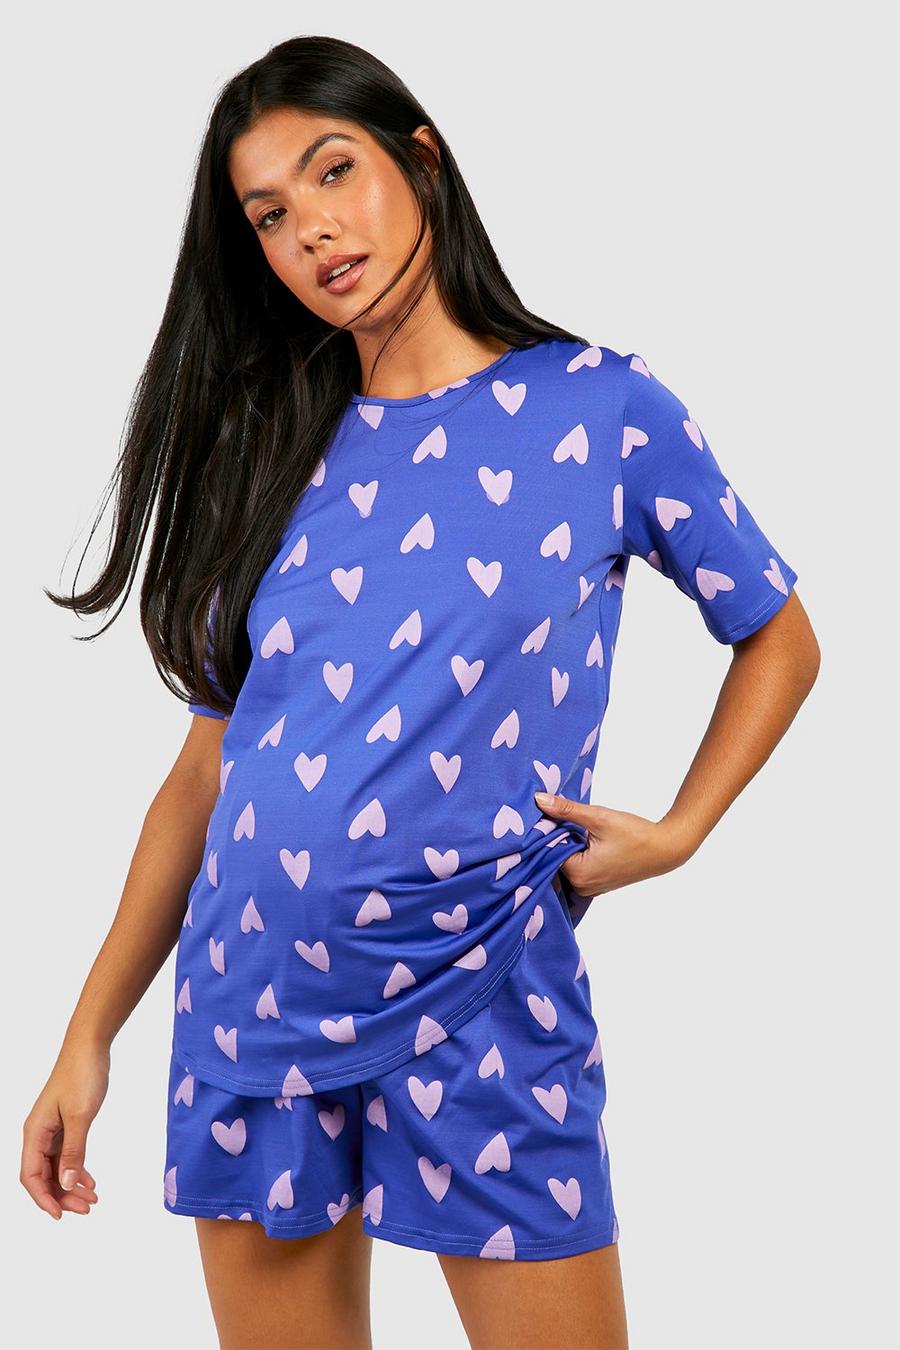 Set pigiama corto Premaman con stampa di cuori, Navy blu oltremare